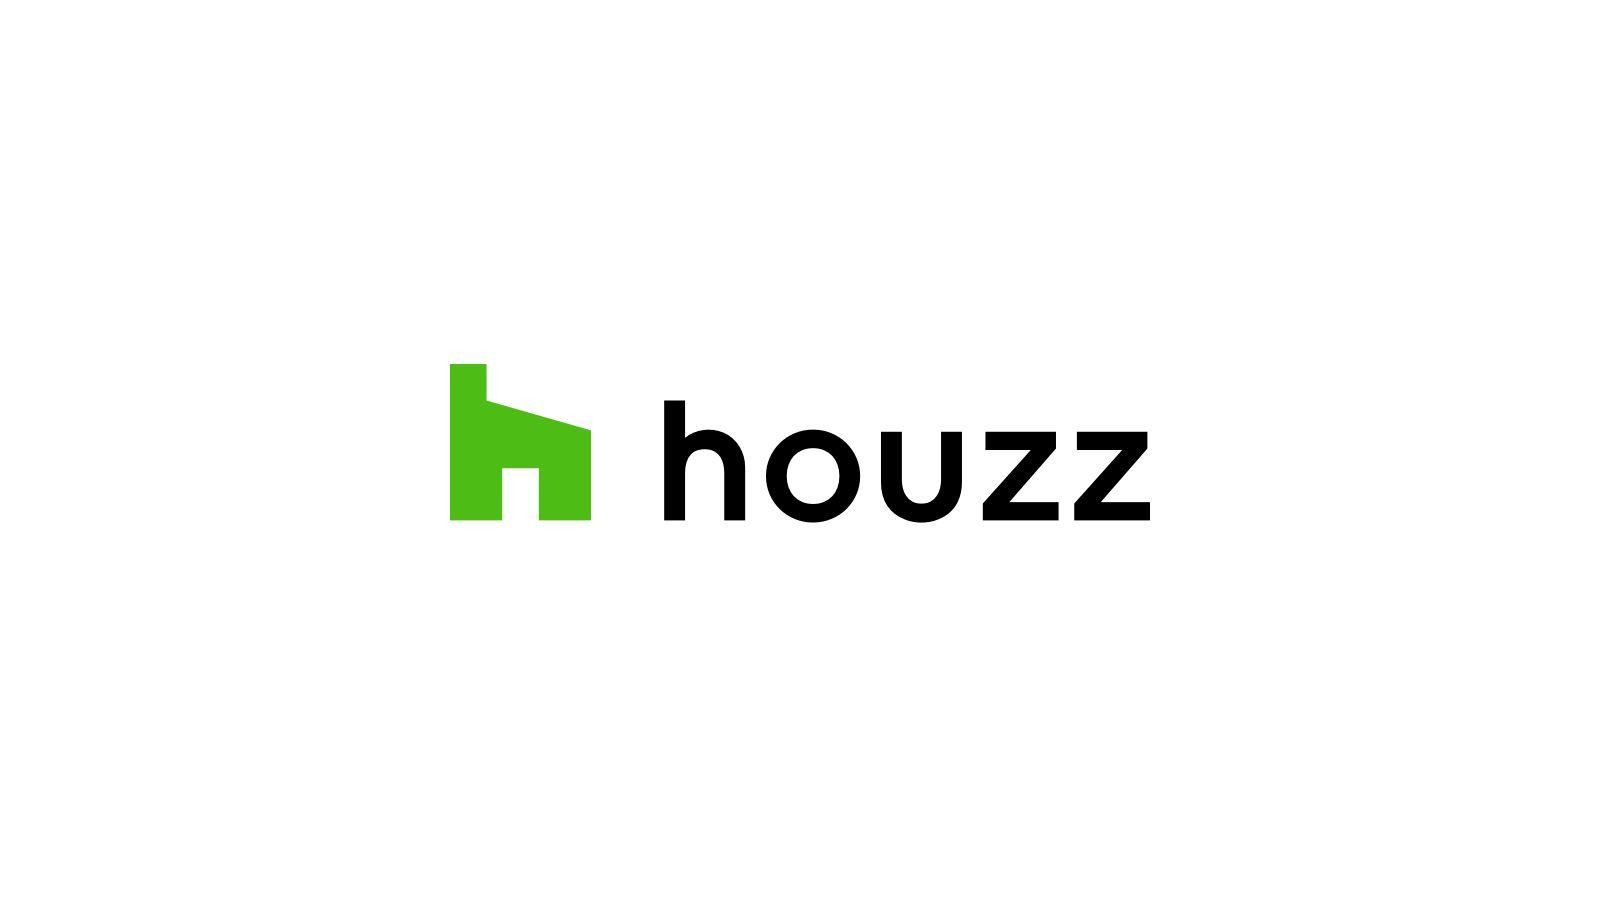 Houzz 2018 Logo - A Logo Redesign for Houzz